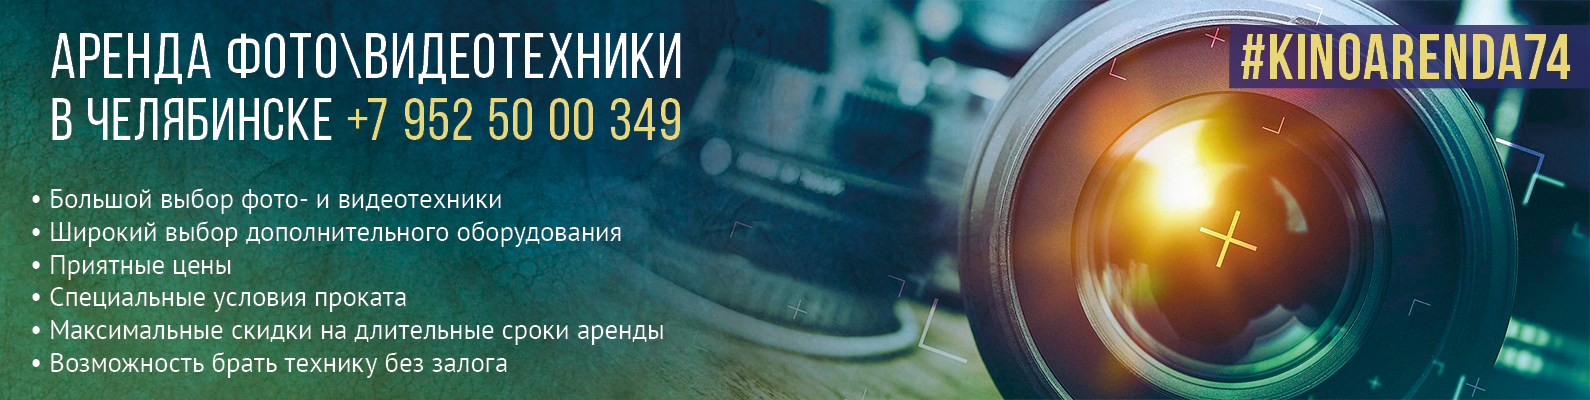 Аренда видео, фото техники, аудио аппаратуры для съемок, объективов, студийного света в Челябинске. - Город Челябинск Bezymyanny-1222.png